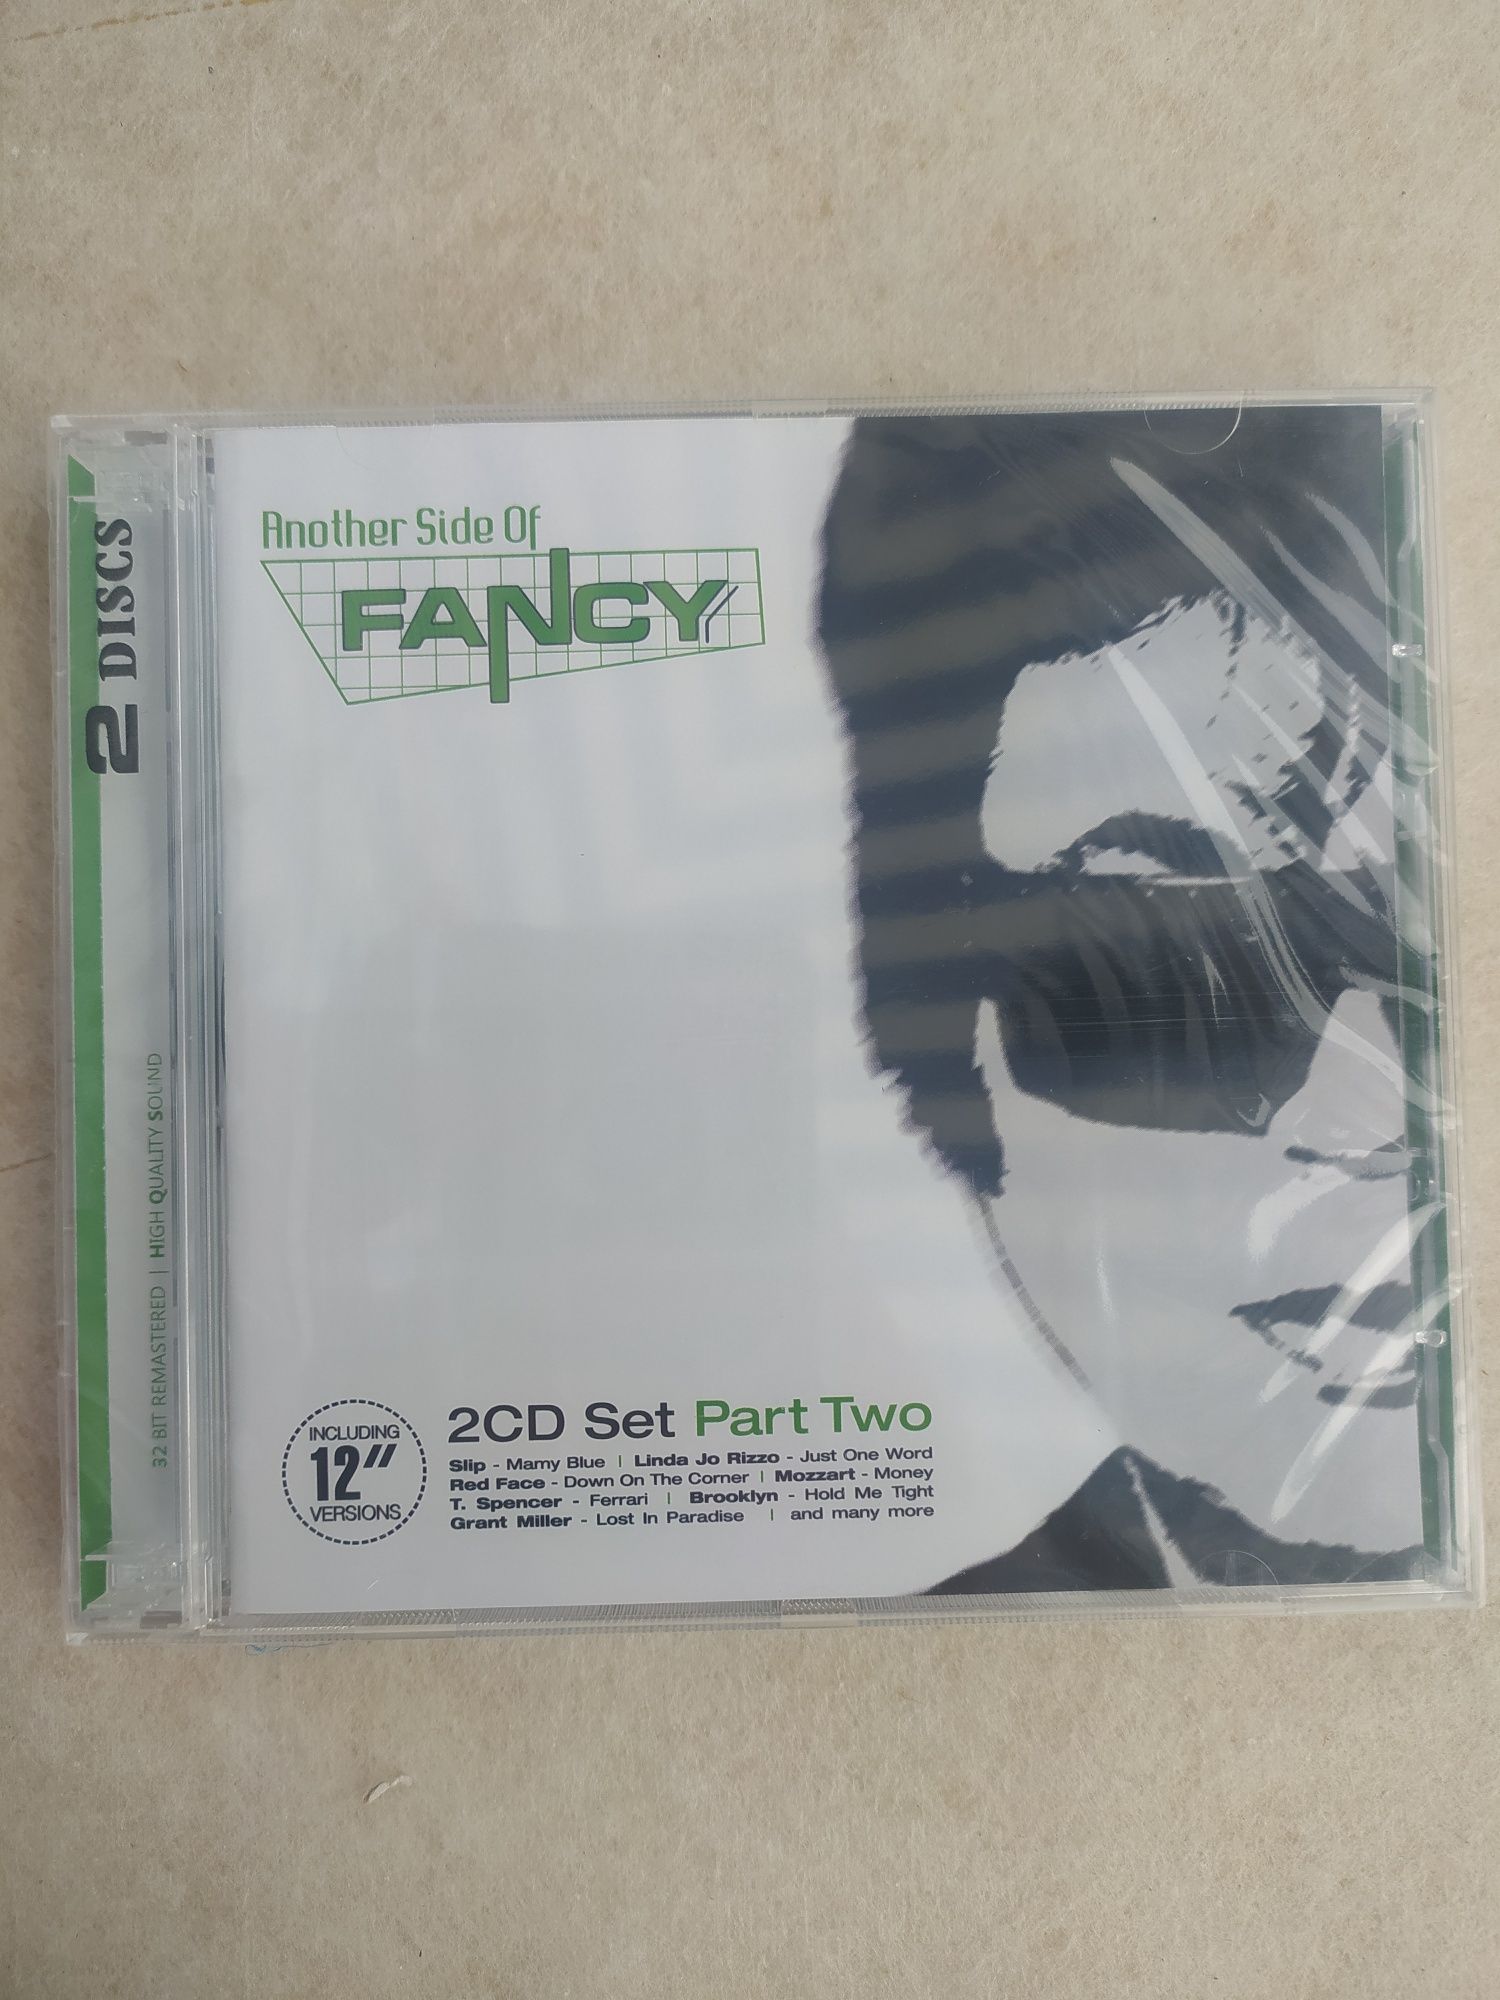 Płyta CD Fancy "Another side of Fancy" Nowa w oryginalnej folii 2Cd